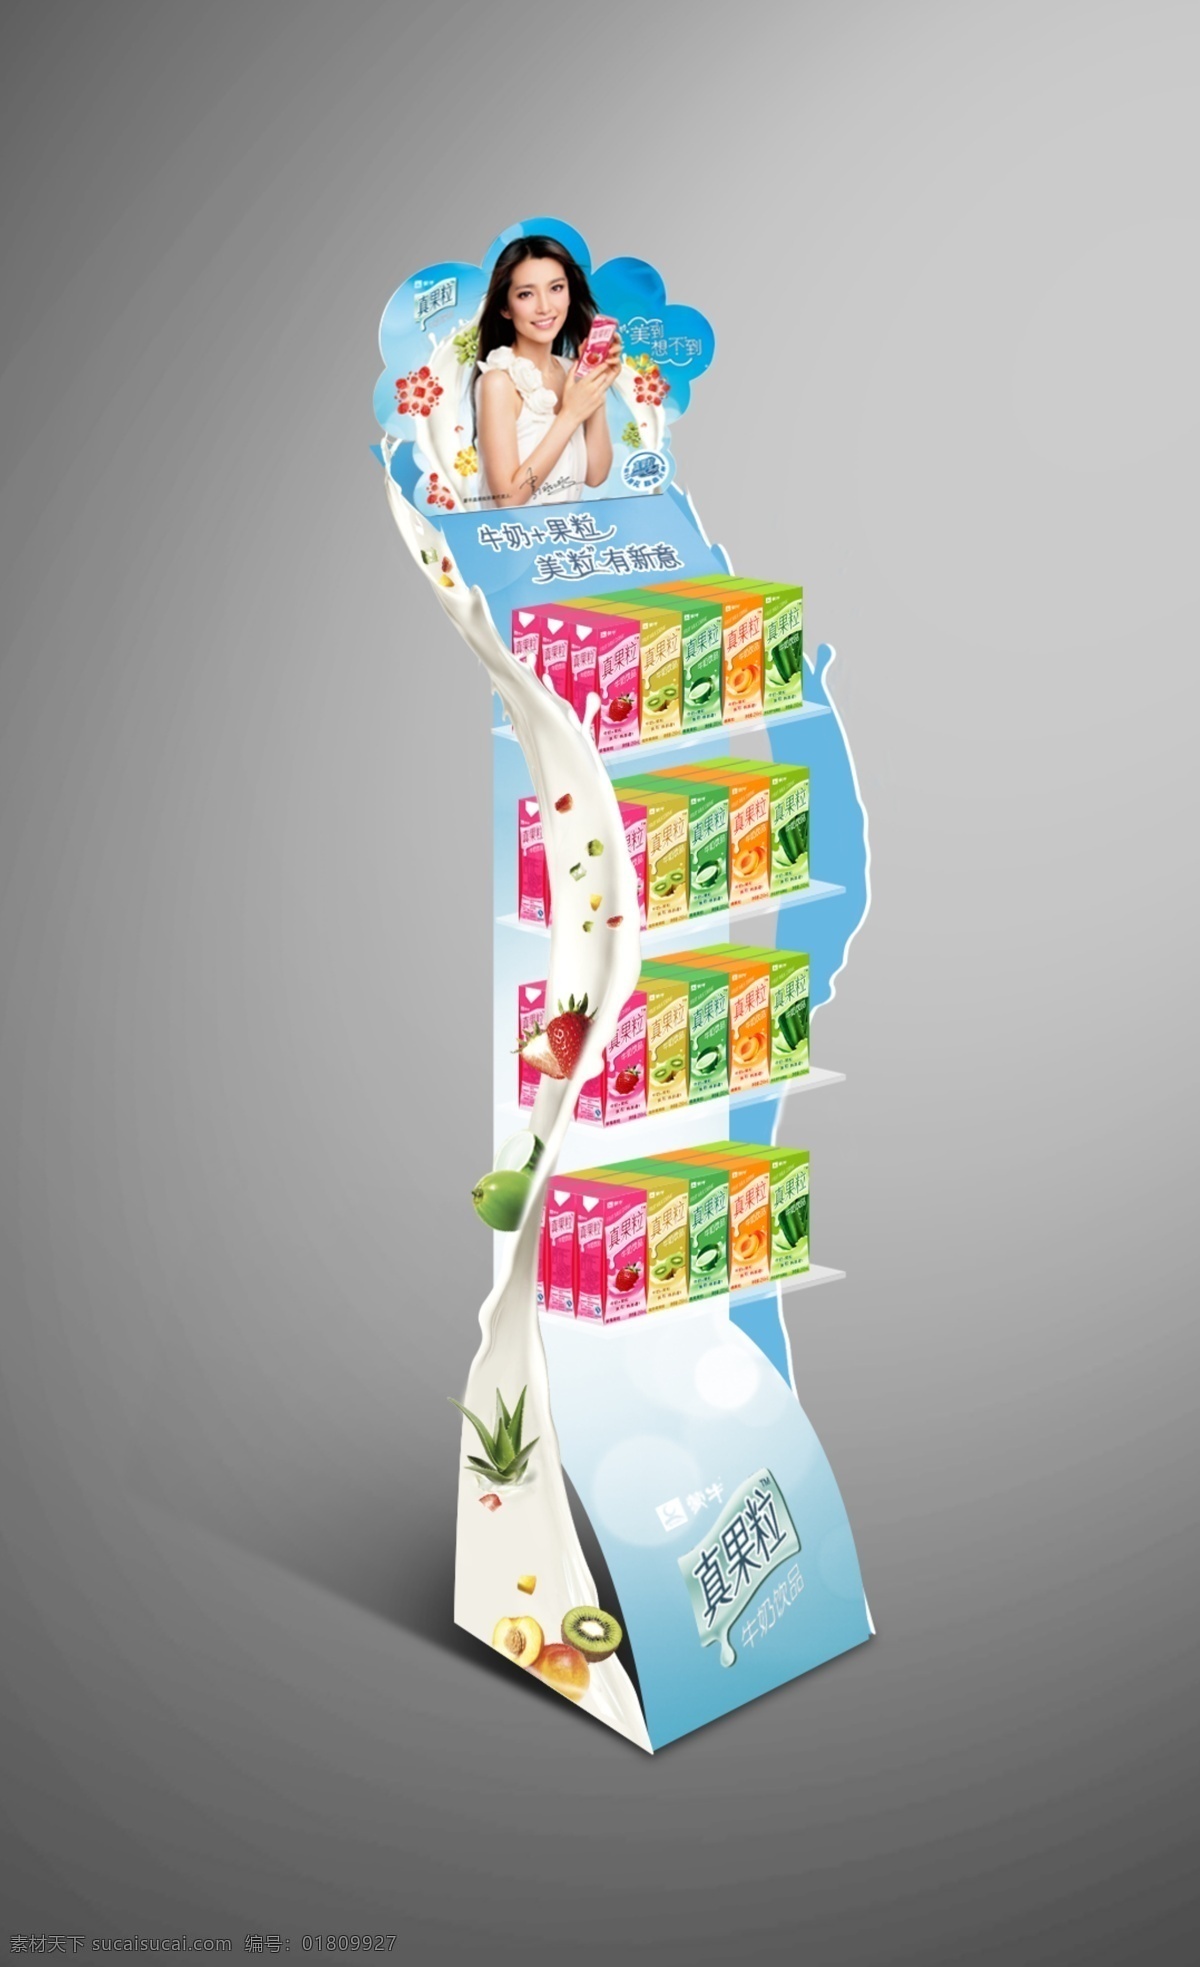 蒙牛 真 果粒 单 品 货架 效果图 李冰冰代言 插卡图 真果粒图片 奶源 国内广告设计 广告设计模板 源文件